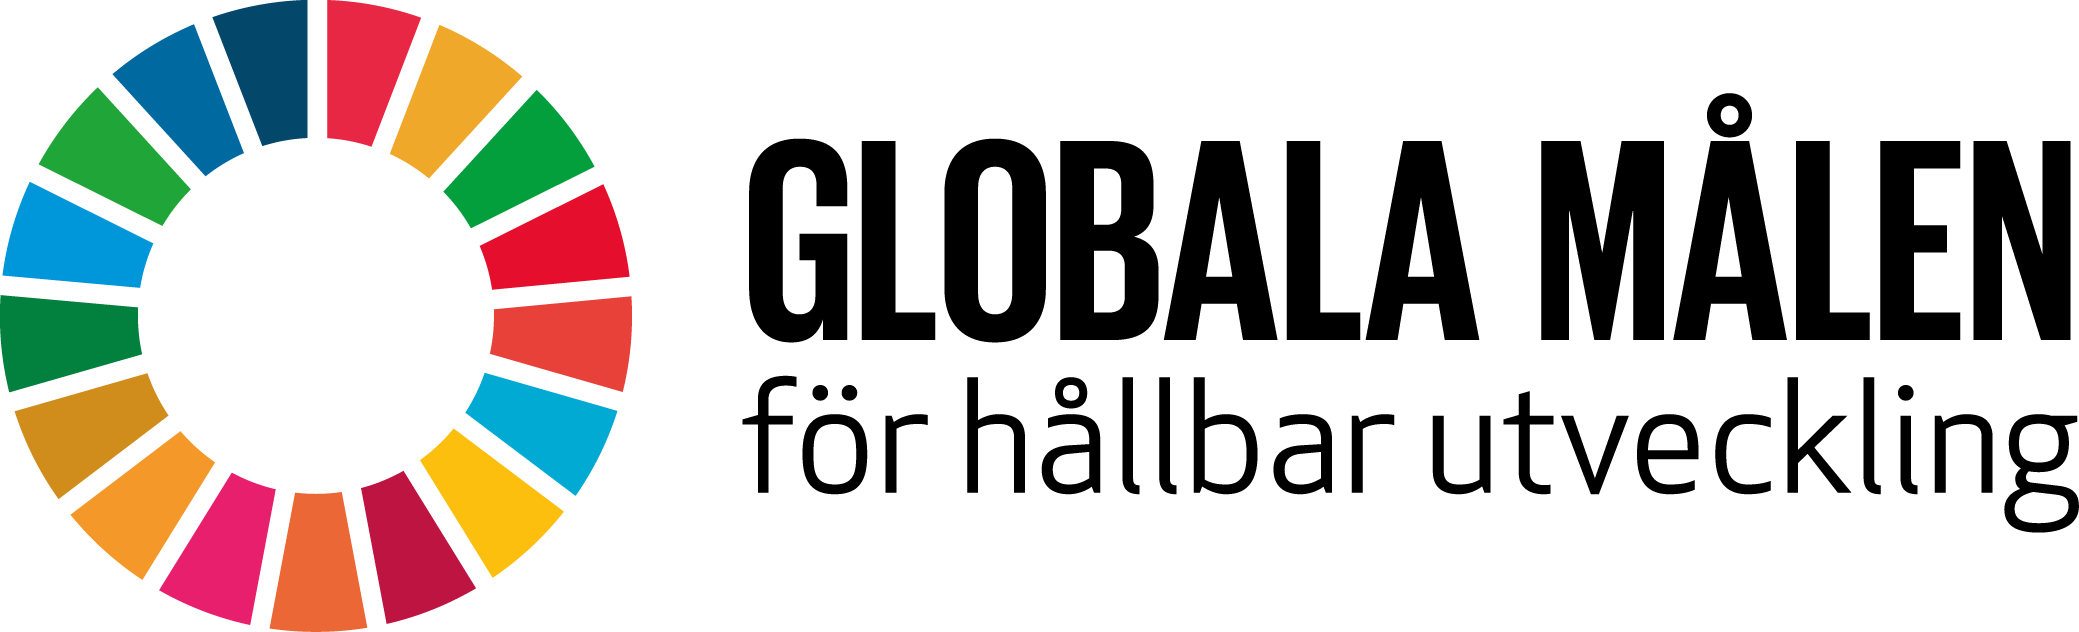 Globala målen för hållbar utveckling - logo